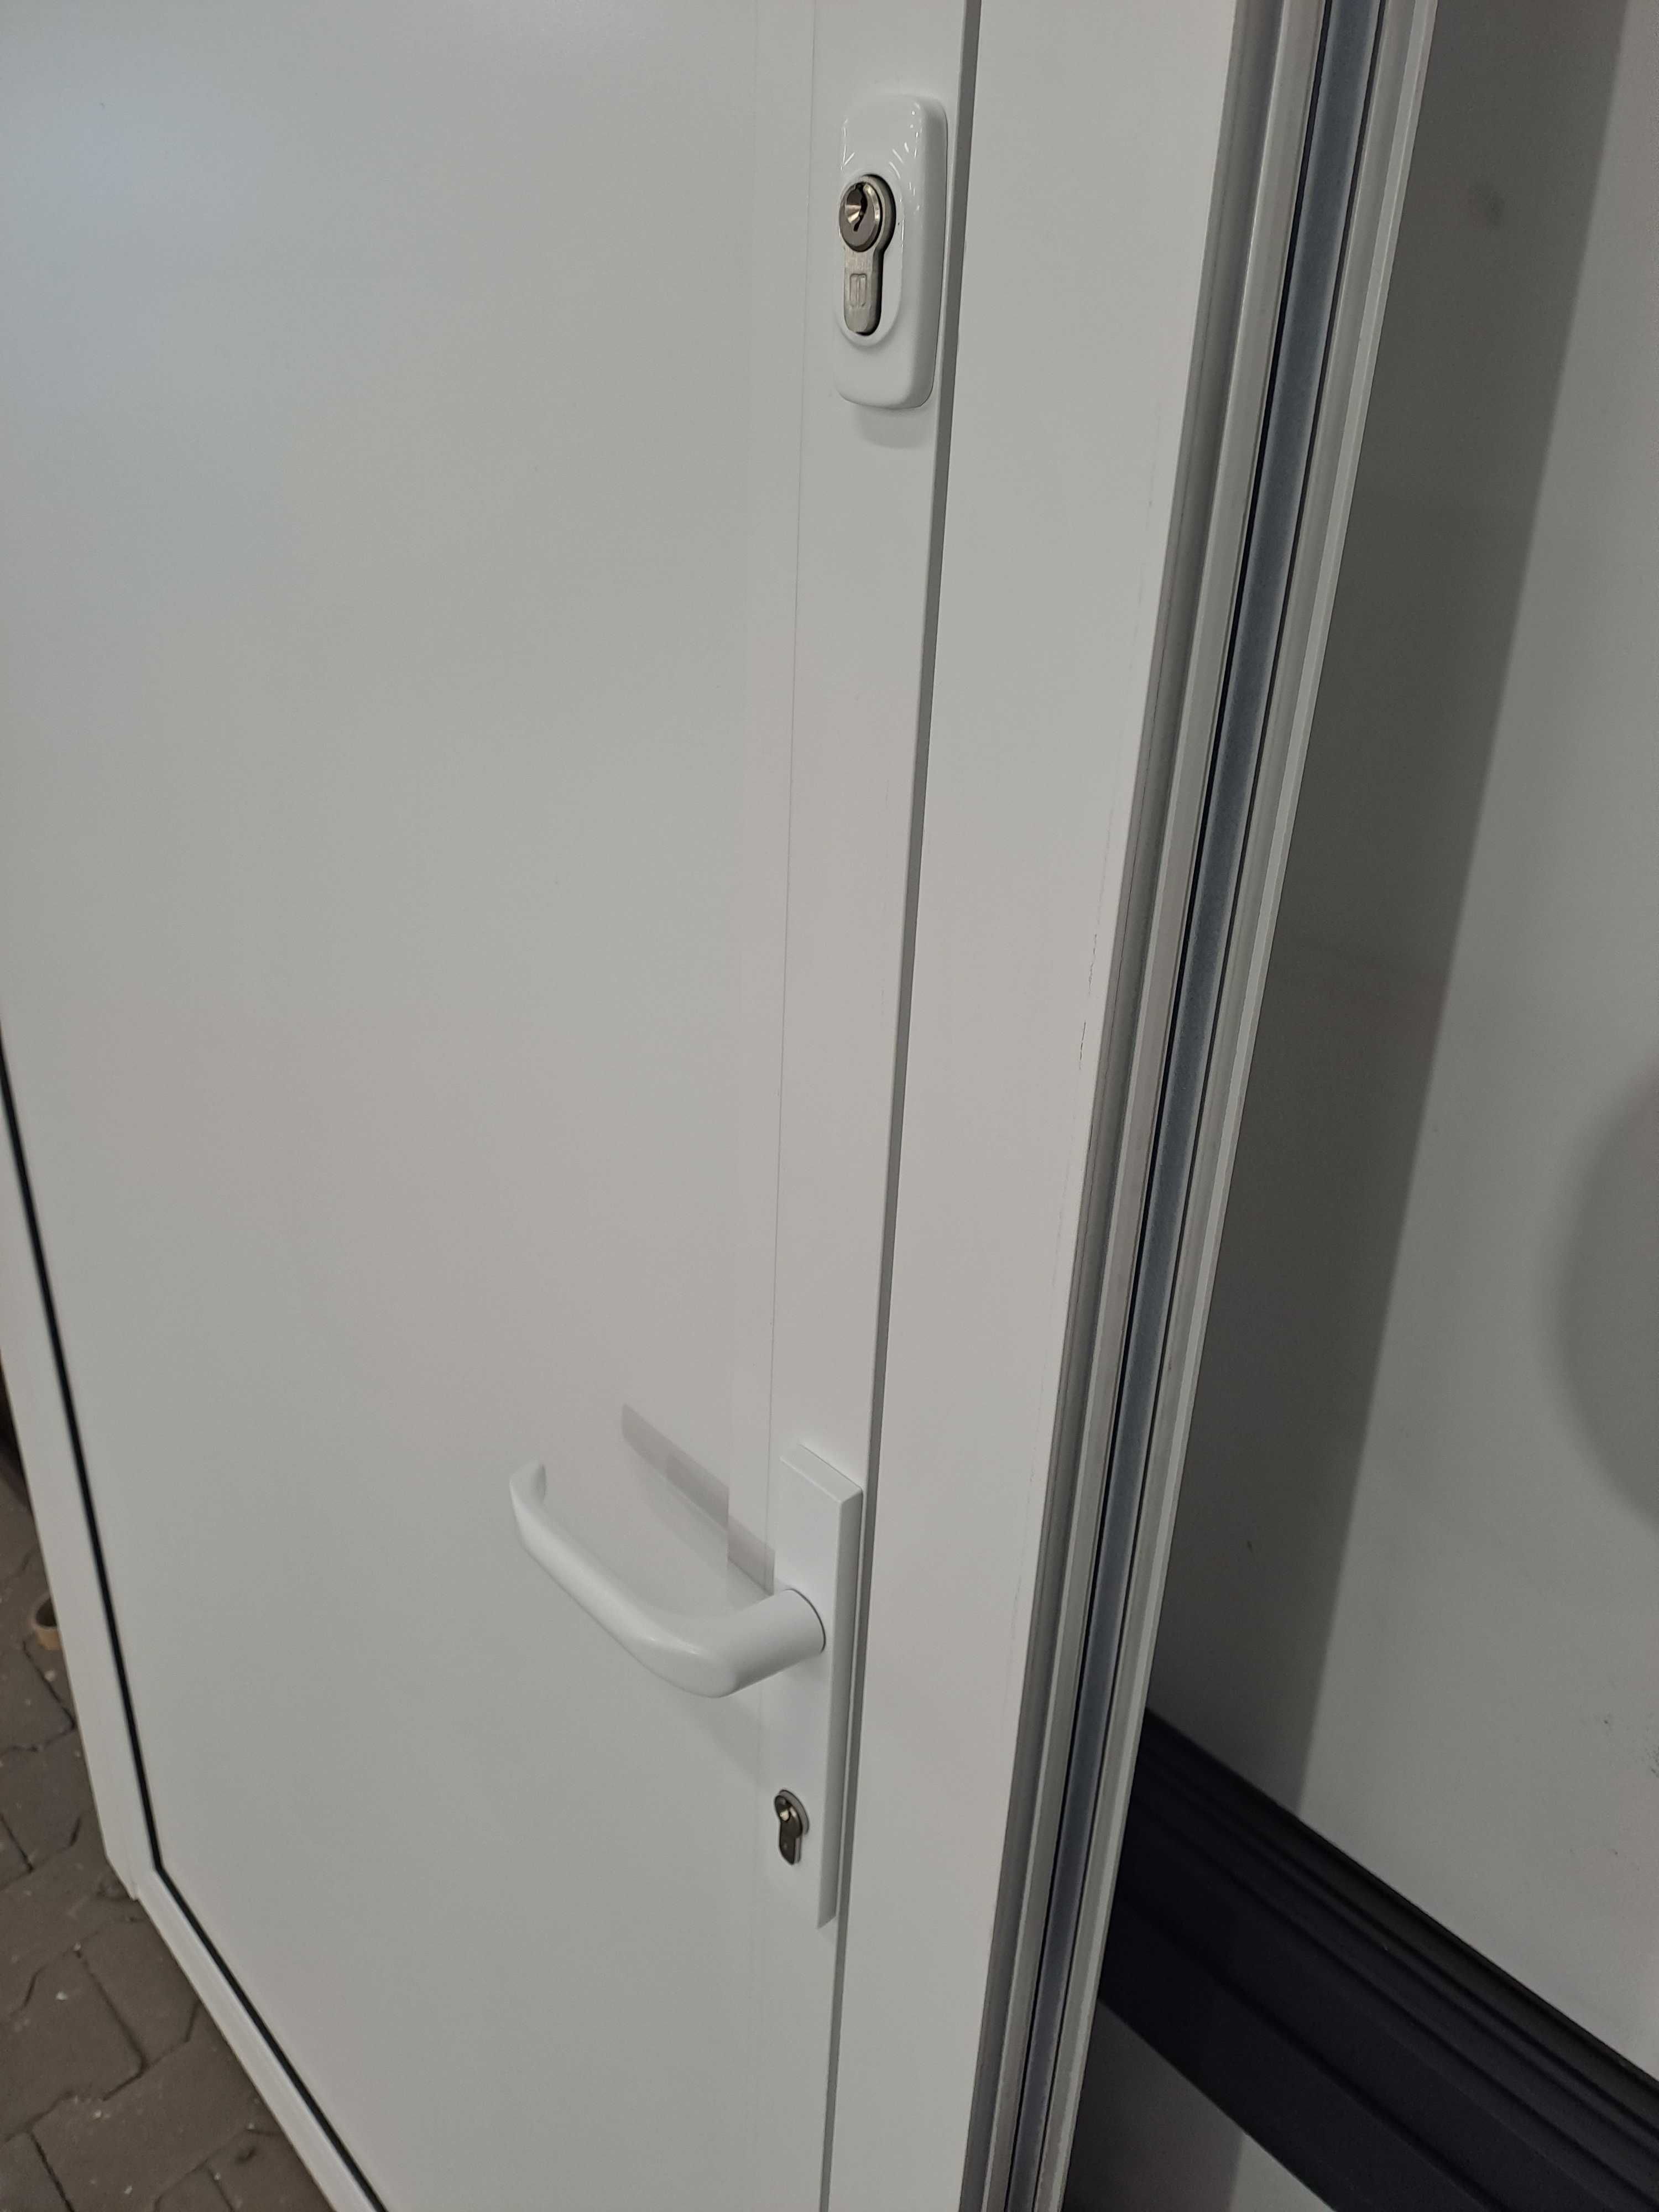 Drzwi panelowe aluminiowe szer 1100 mm x wys 2100 mm